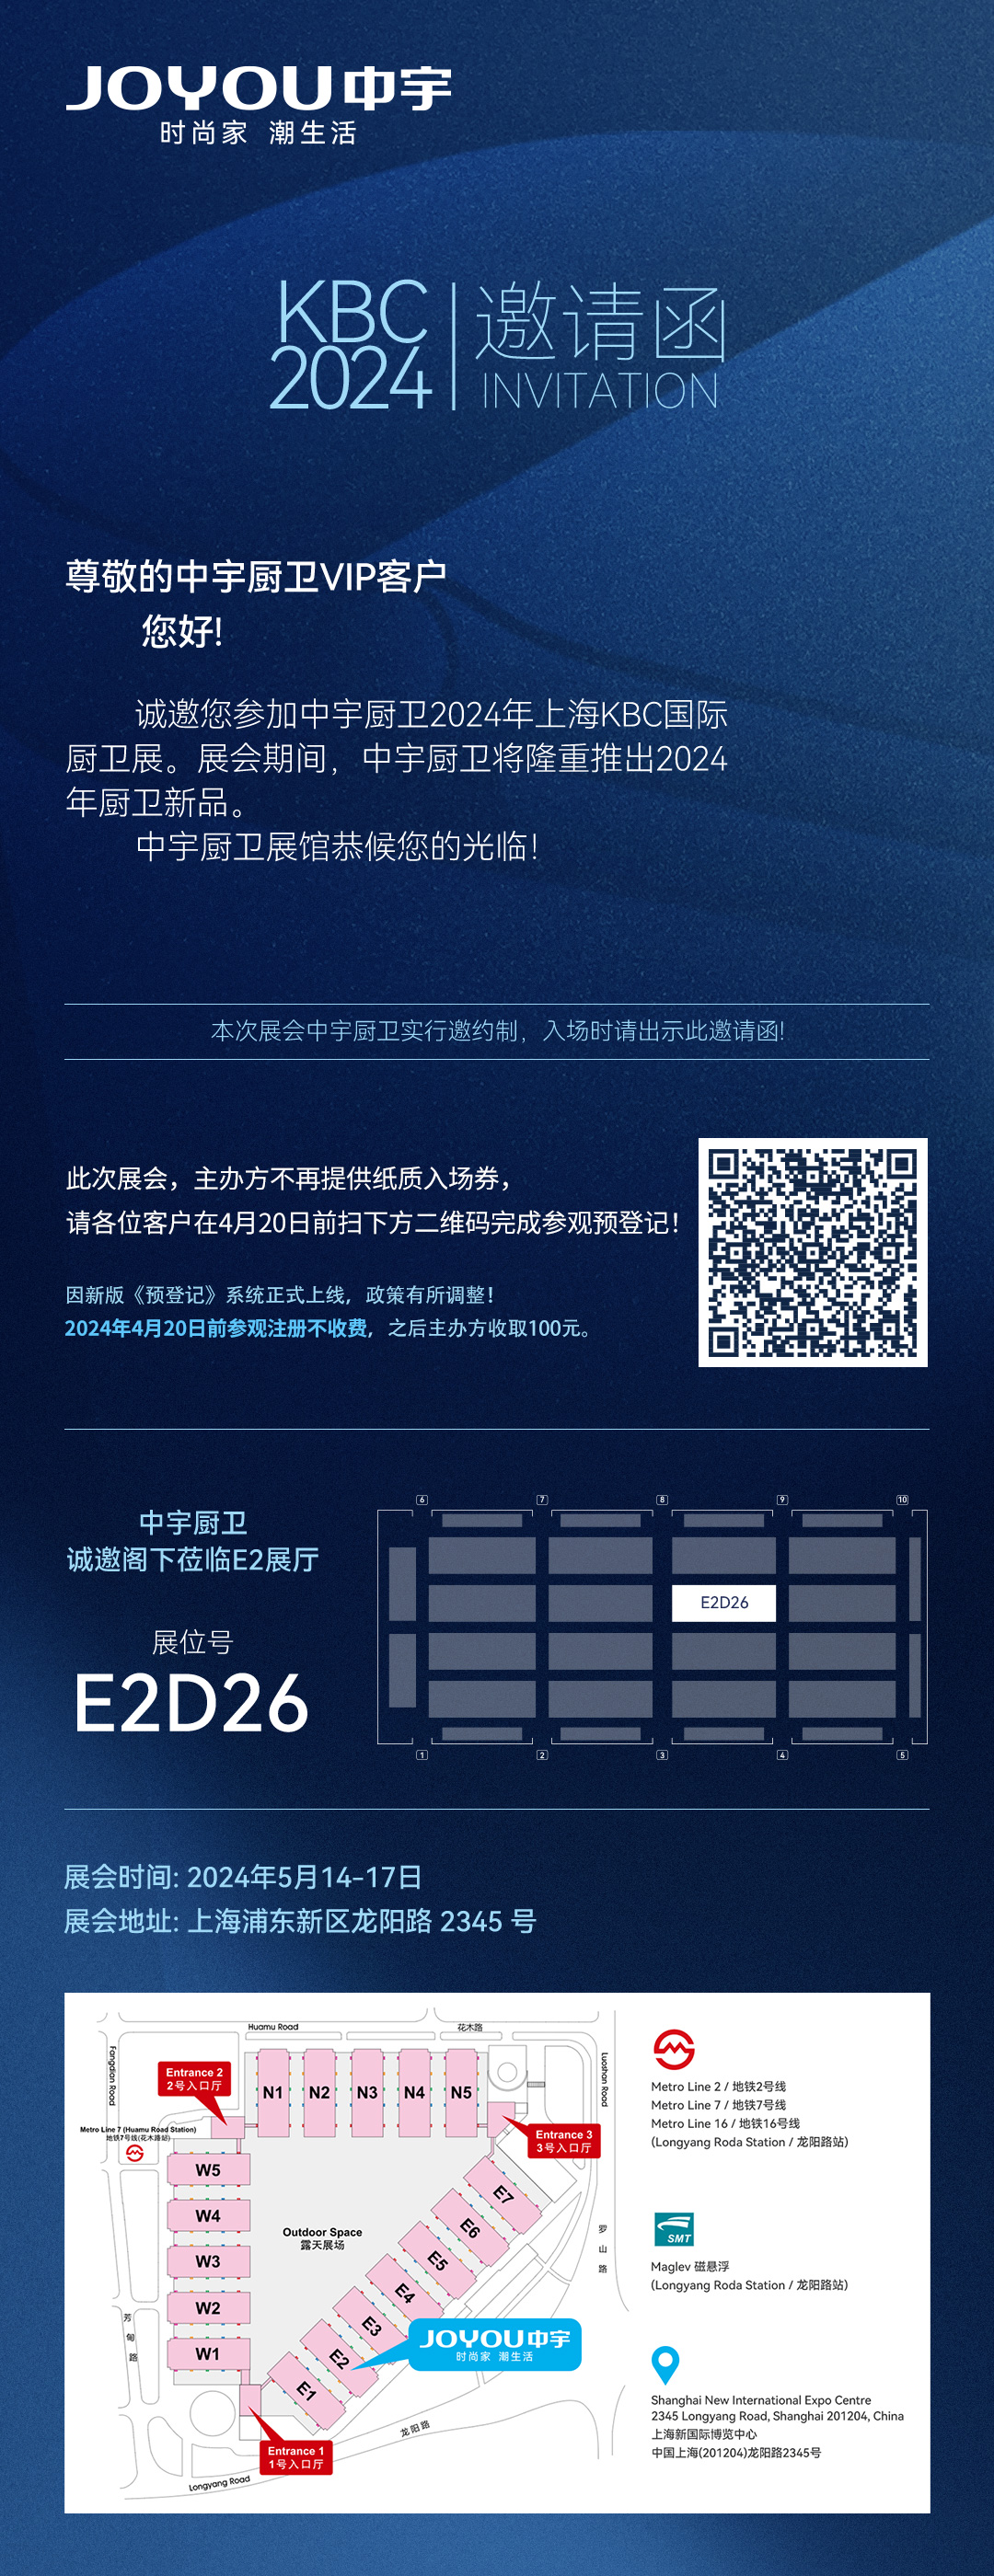 上海展-登记1080x2800px